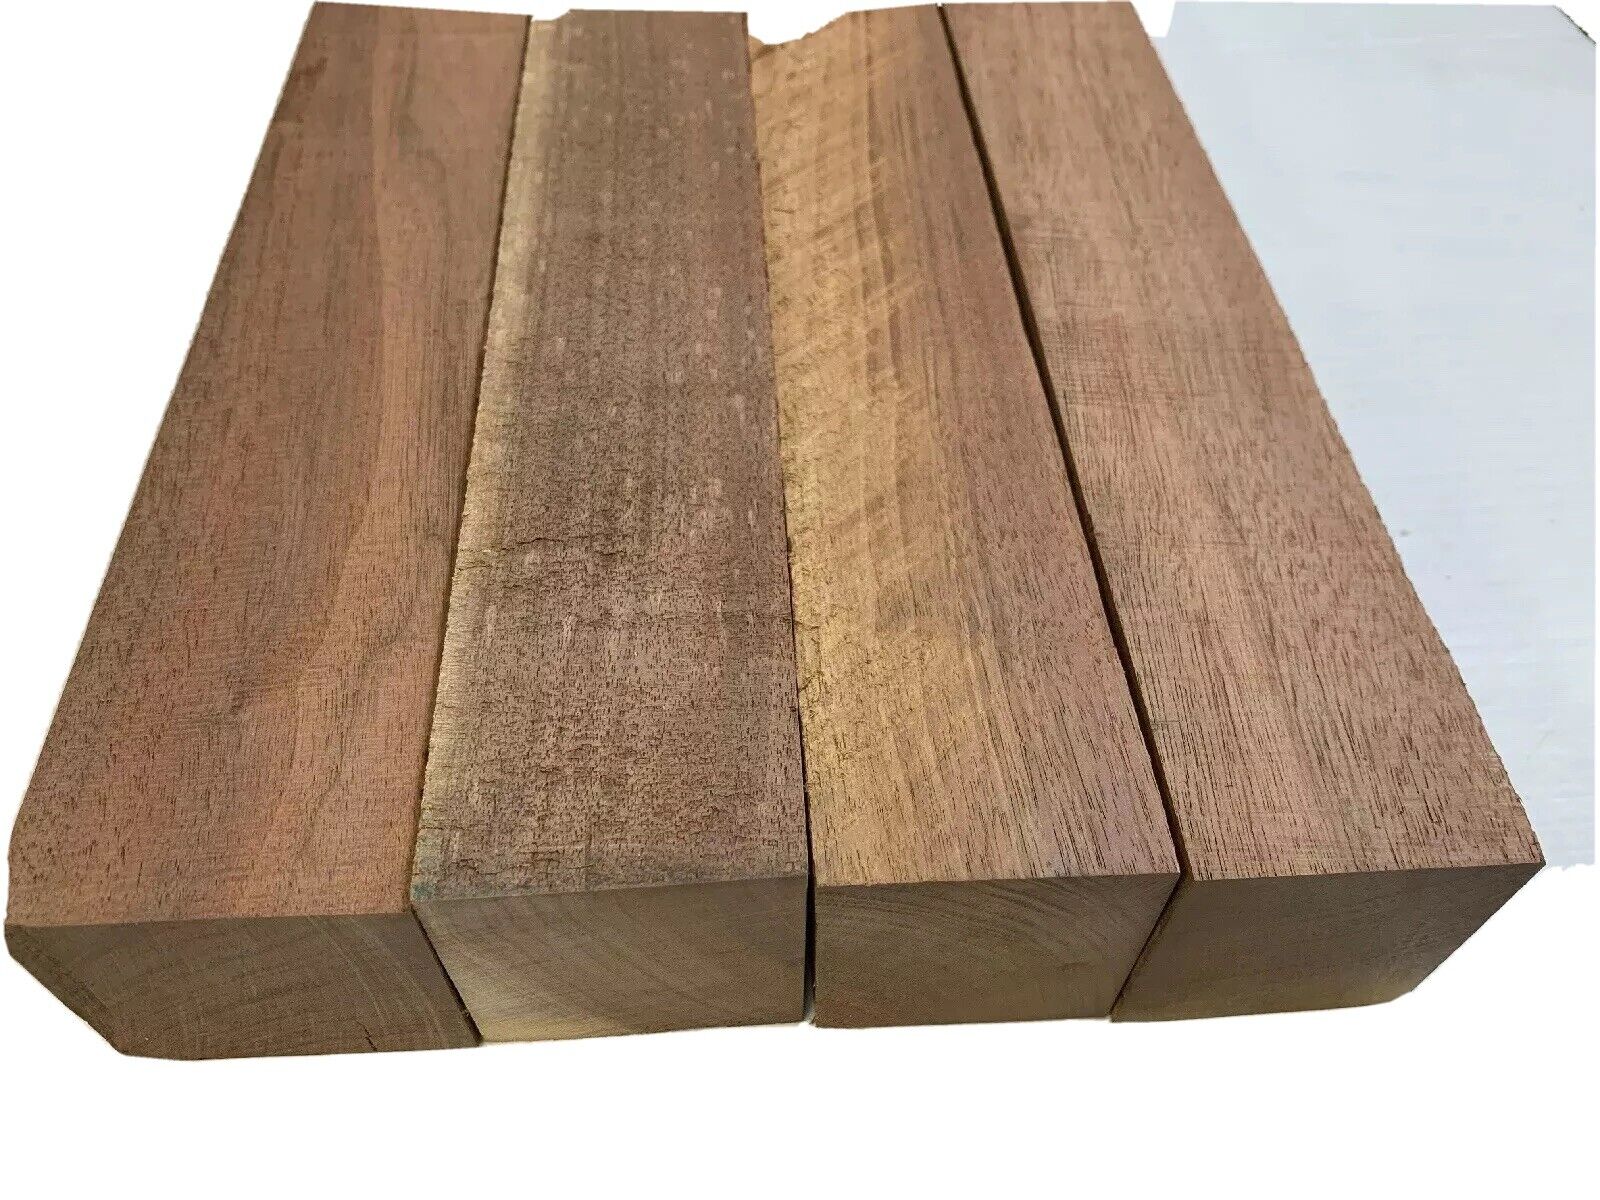 4 Pack Set,  Black Walnut Lumber Board, Turning Wood  - 2" x 2" x 12"  FREE SHIP EXOTIC WOOD ZONE Turning Wood Blanks - фотография #3